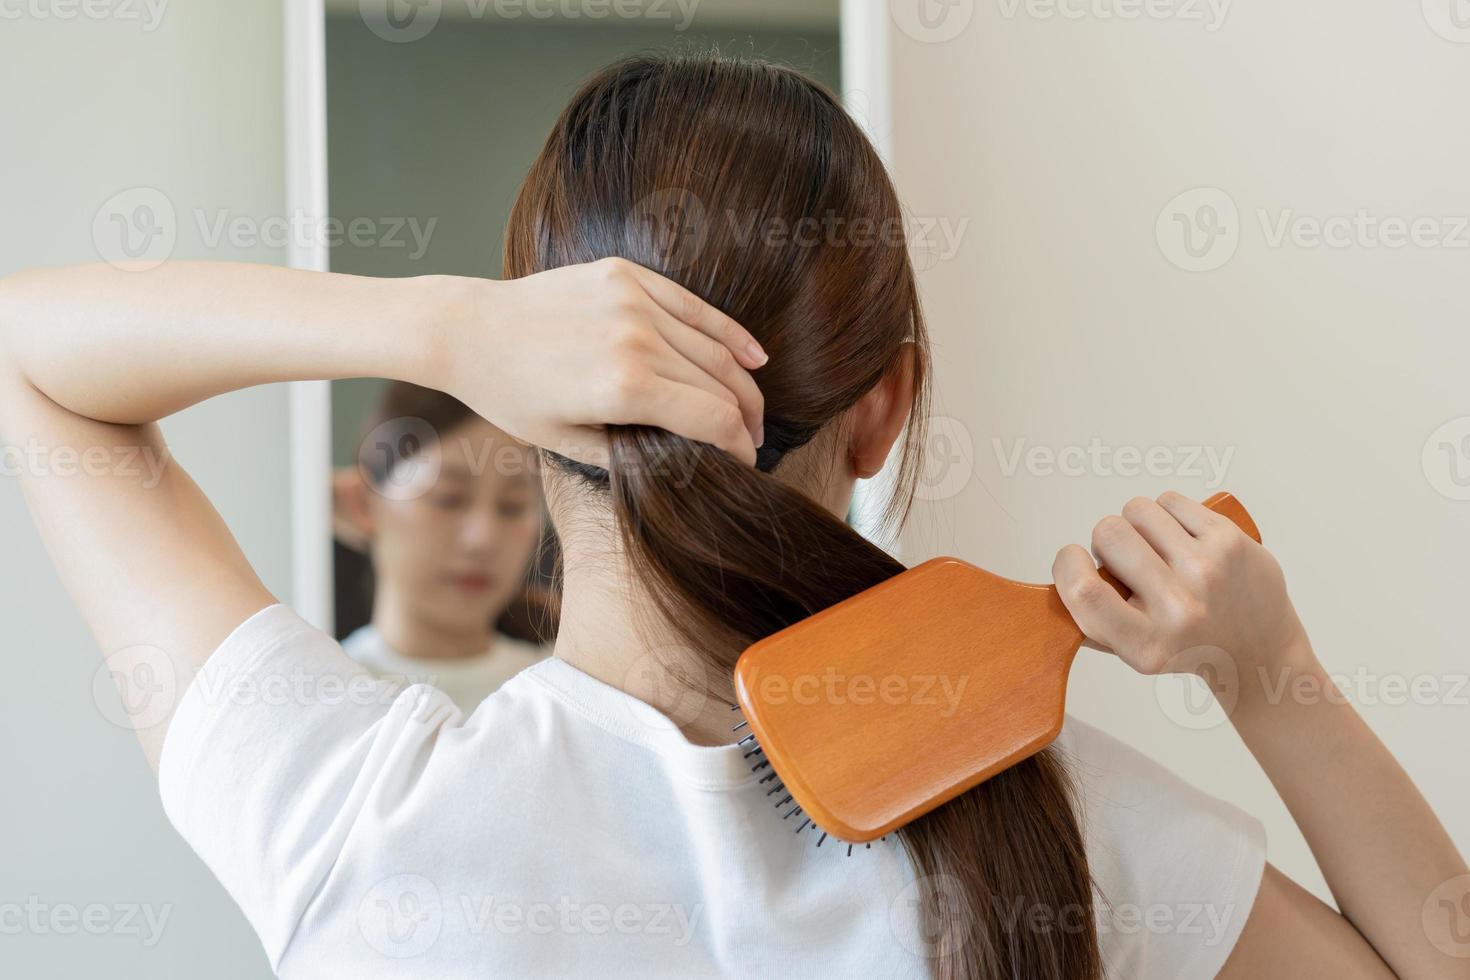 Gesundheit Haar Pflege, Schönheit bilden asiatisch Frau, Mädchen halten Haarbürste und Bürsten, Kämmen ihr lange Gerade Haar suchen beim Betrachtung im Spiegel im Morgen Routine nach Salon Behandlung, Frisur. foto